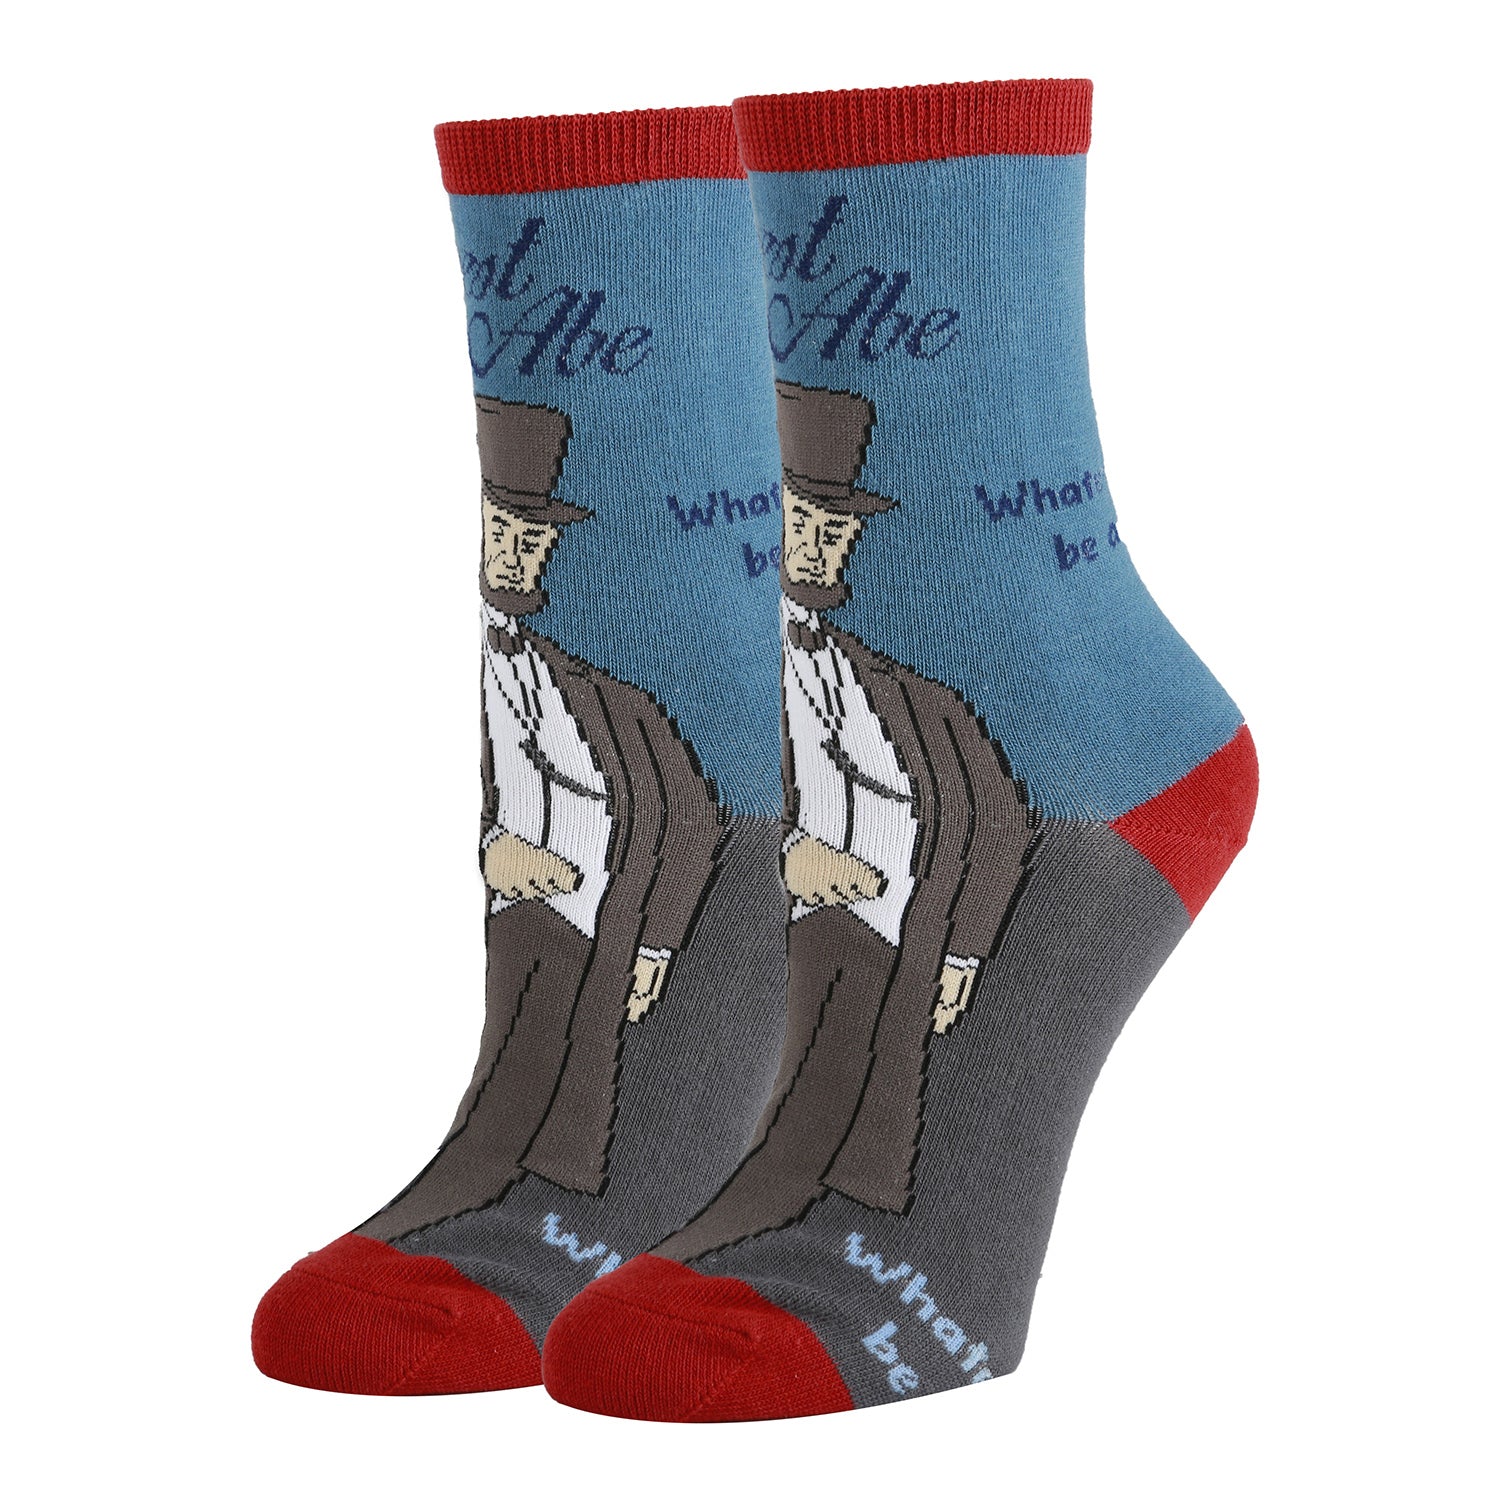 Honest Abe Socks | Novelty Crew Socks For Women